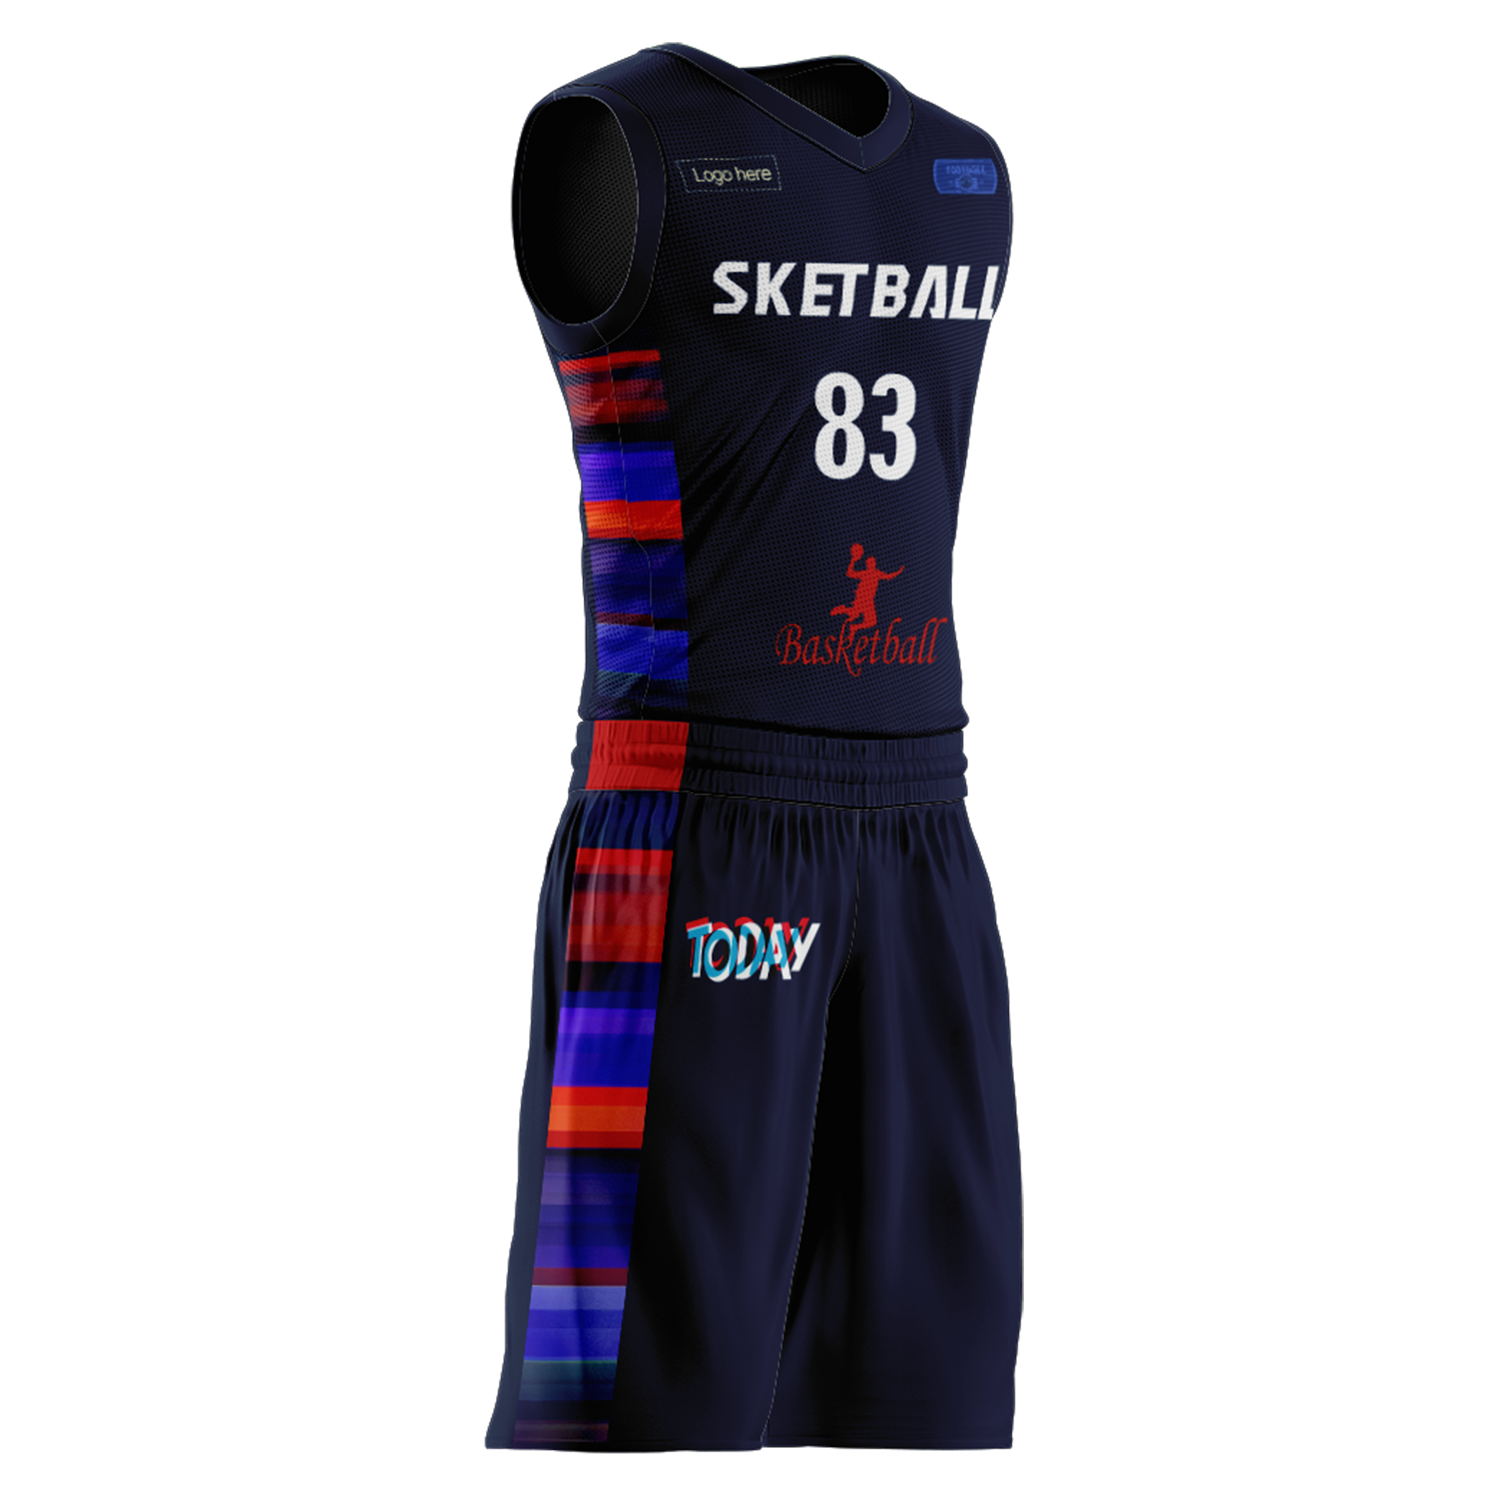 Trajes personalizados de baloncesto del equipo de Corea del Sur